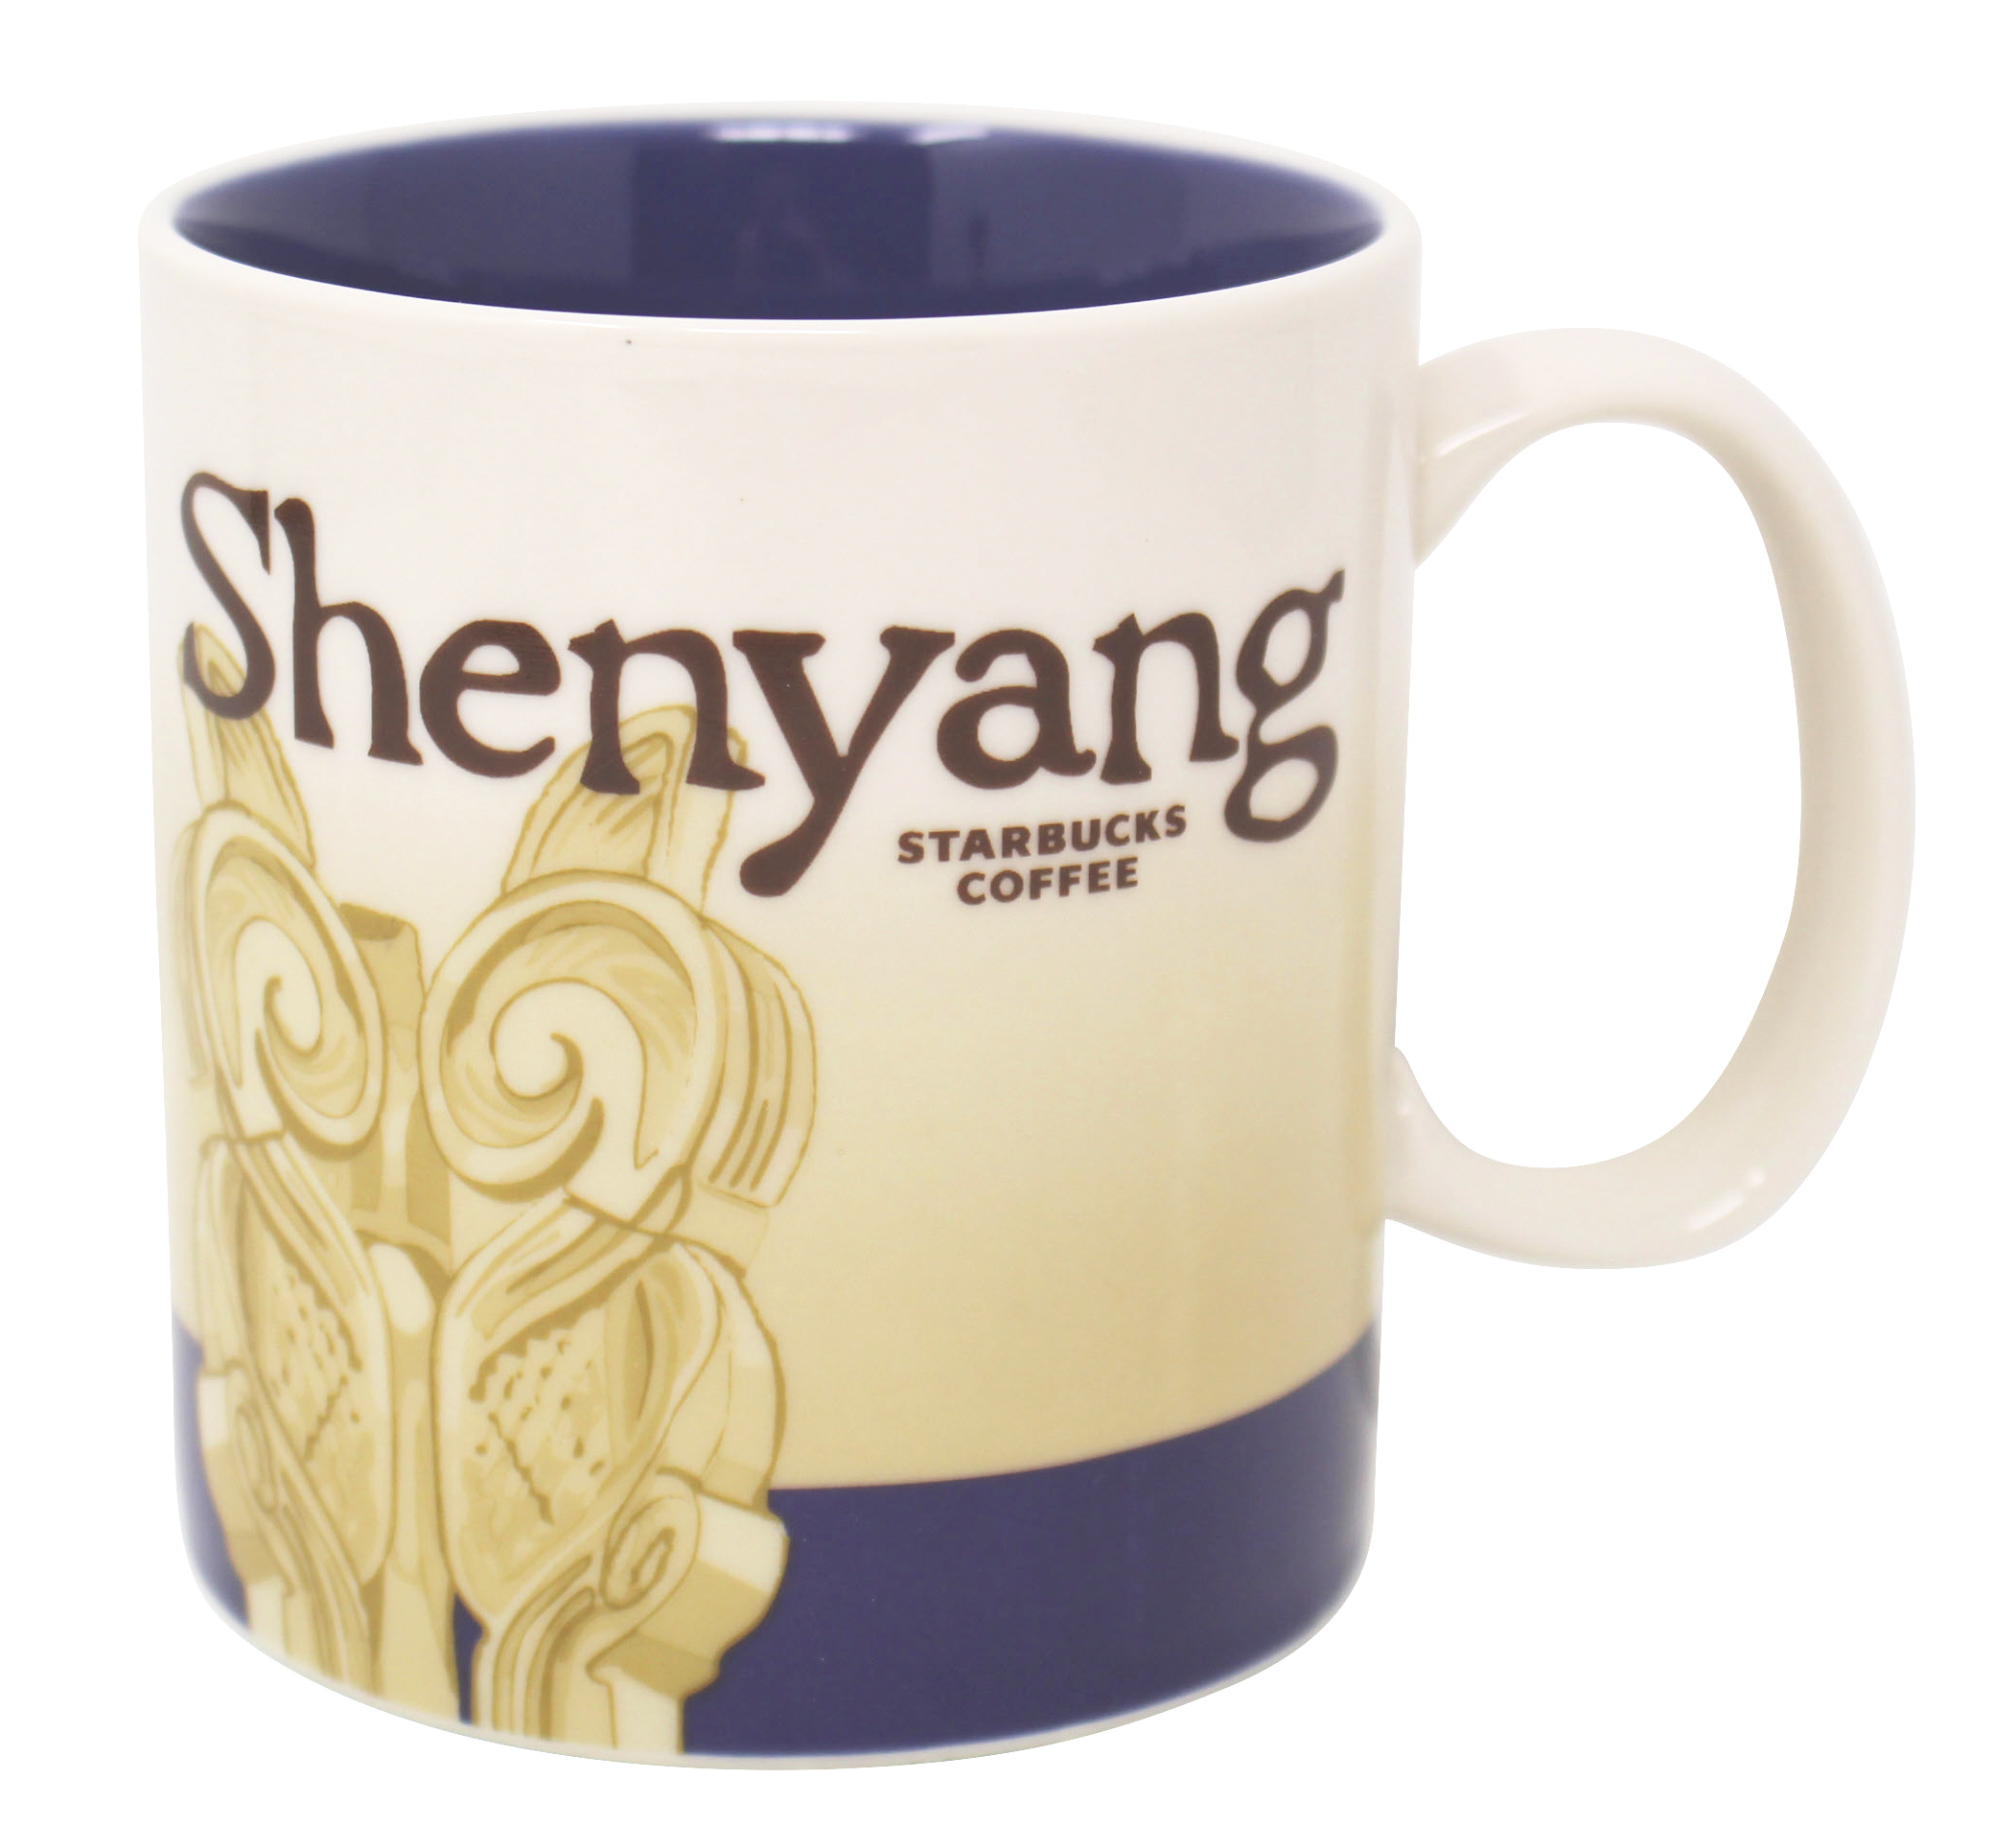 Starbucks Global Icon Series Shenyang Ceramic Mug, 16 Oz